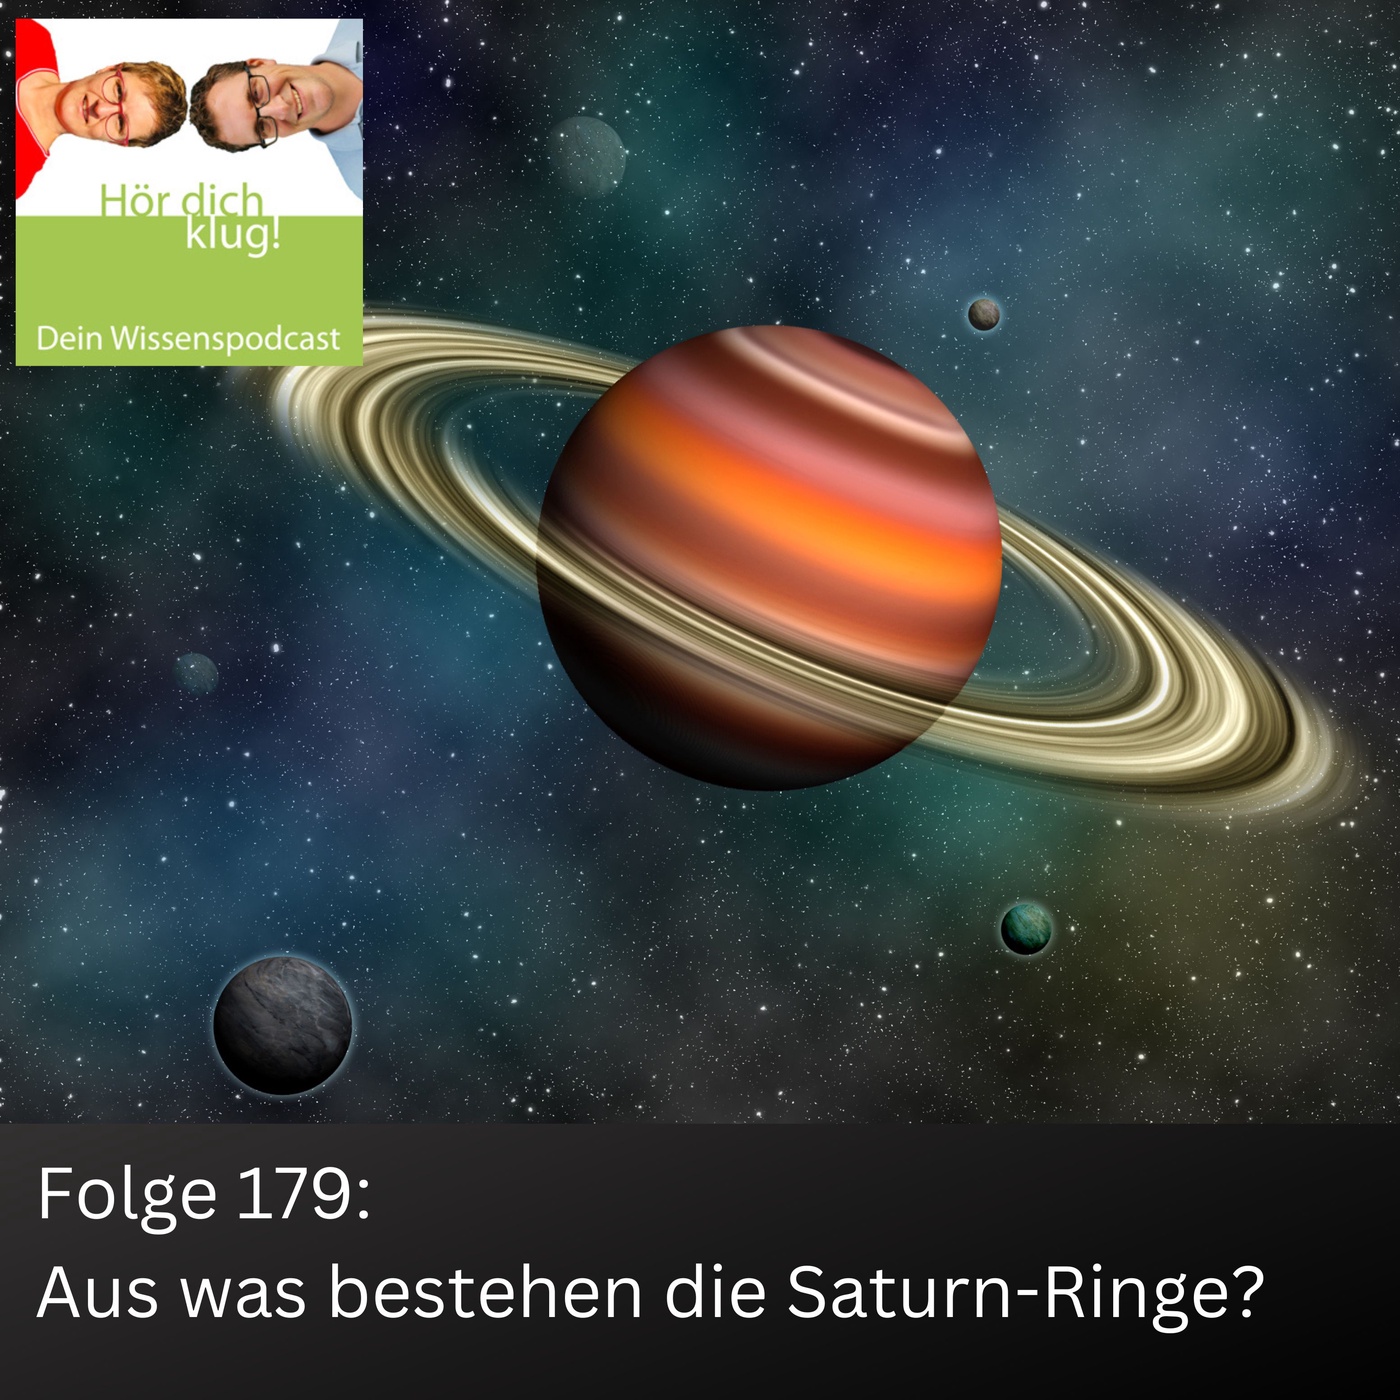 Aus was bestehen die Saturn-Ringe?